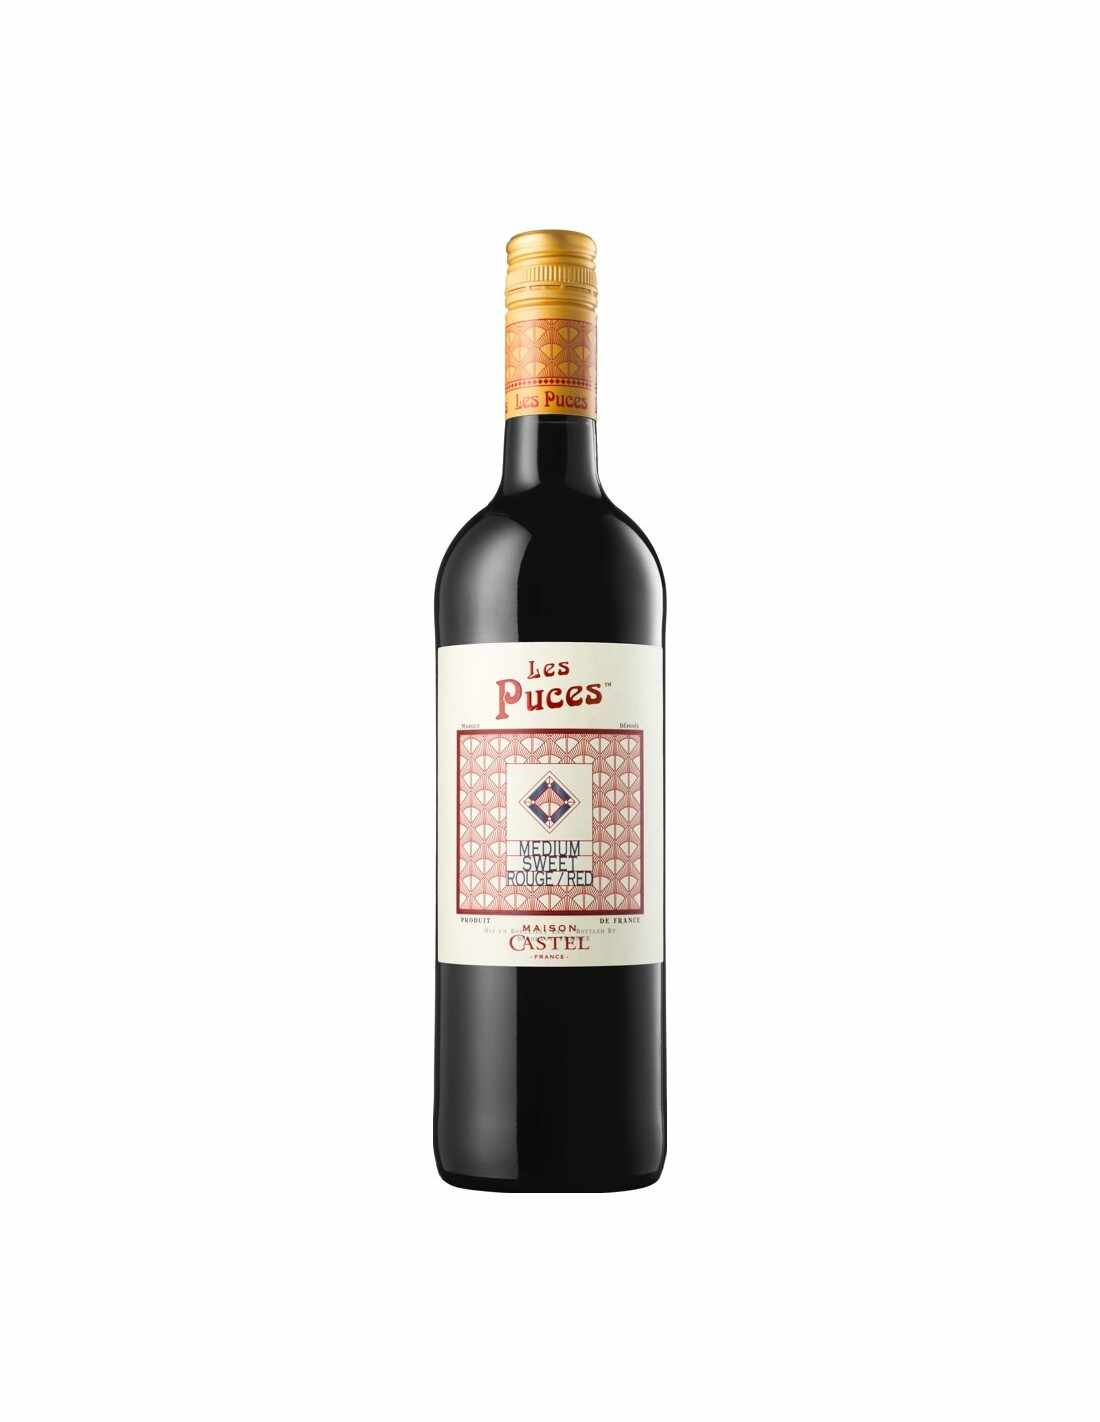 Vin rosu demidulce, Grenache, Les Puces Maison Castel, 11.5% alc., 0.75L, Franta